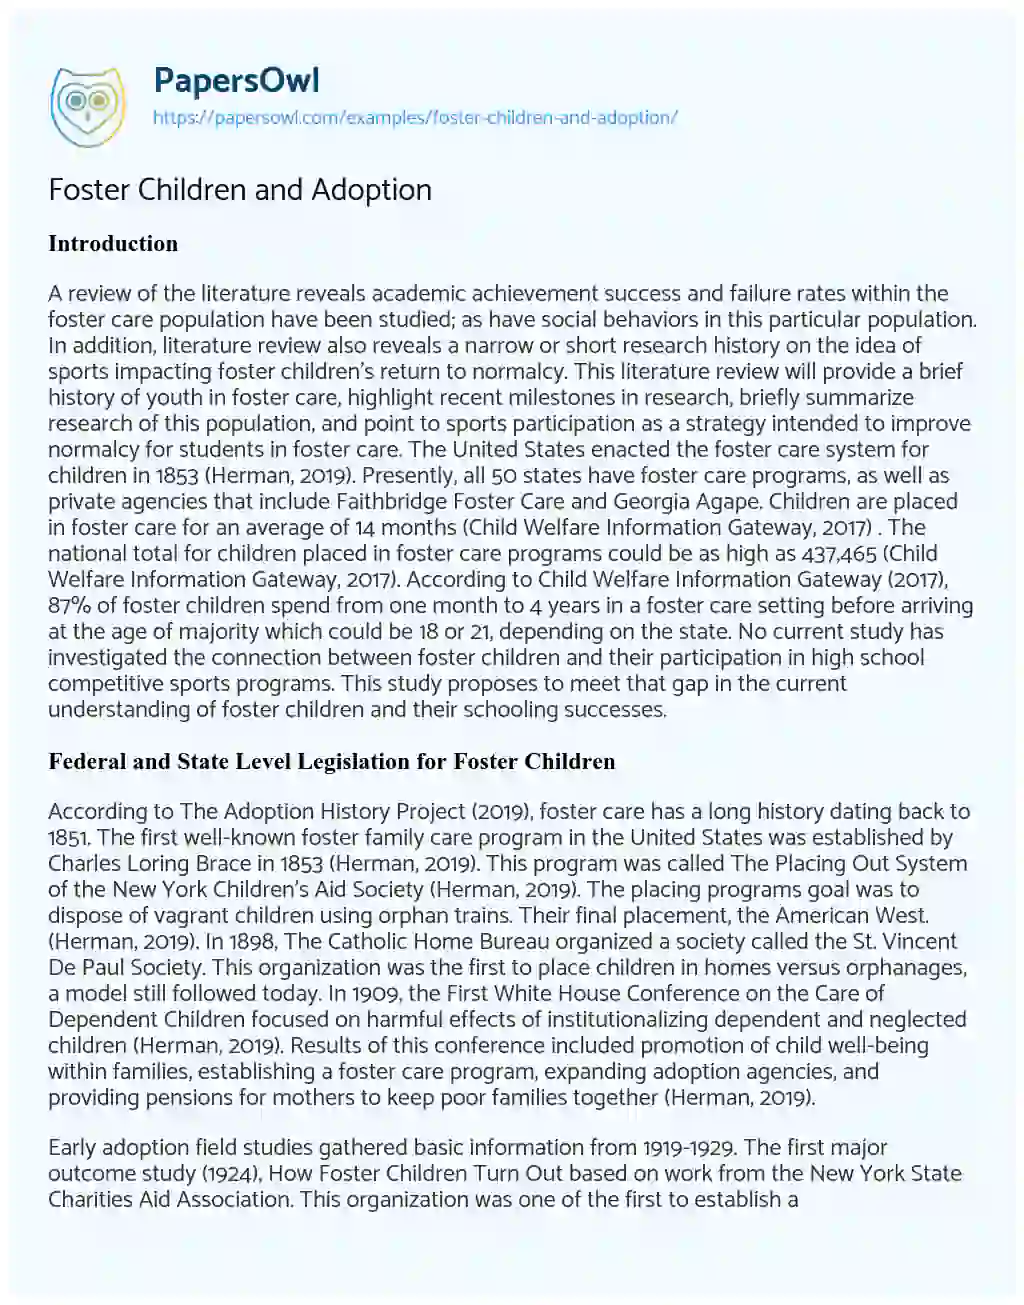 Foster Children and Adoption essay